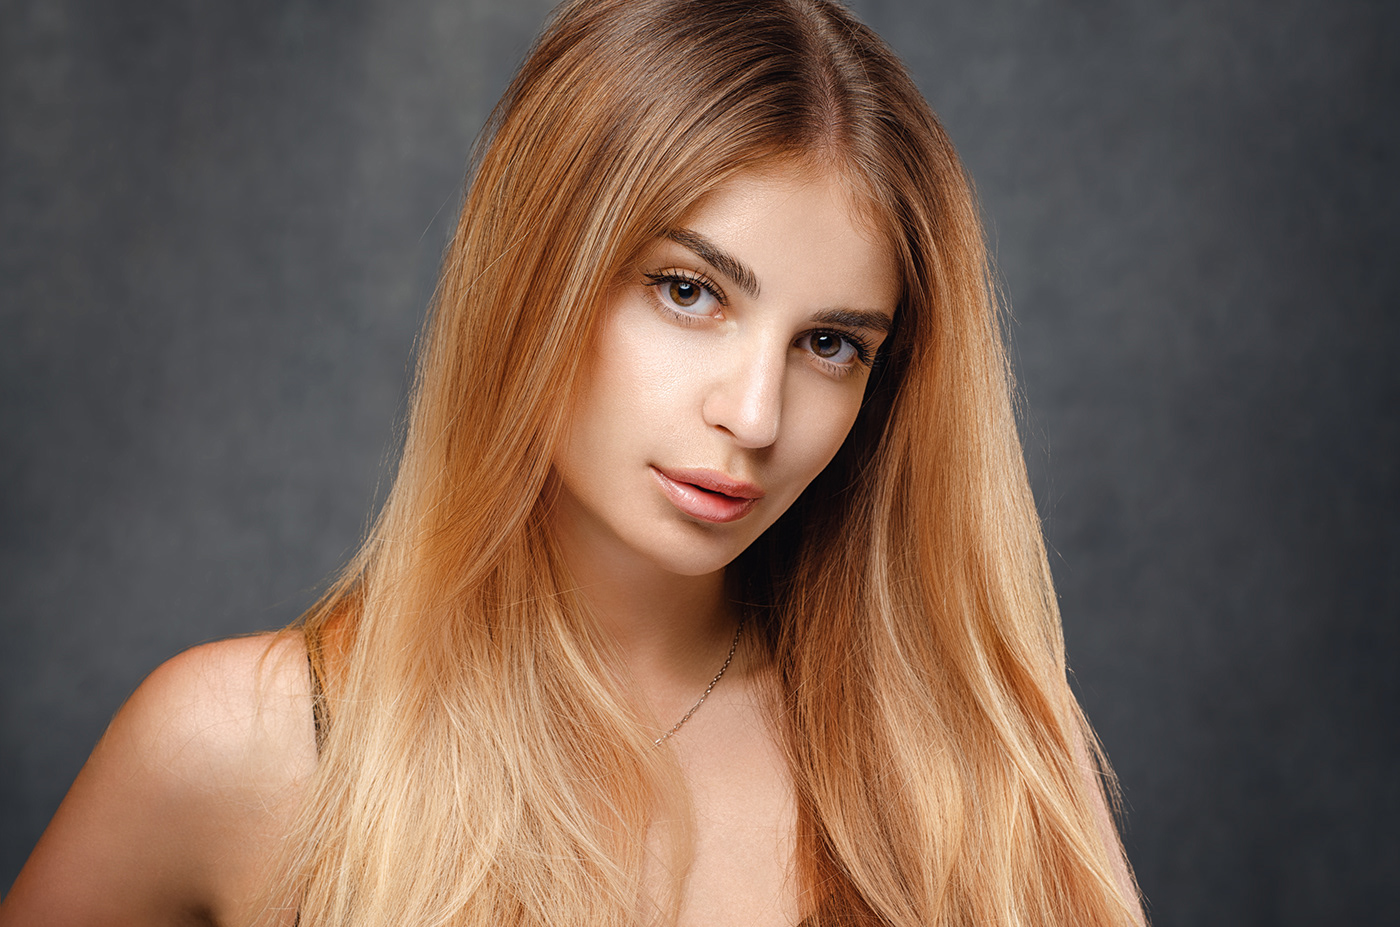 beauty girl hair hi end light photo portrait retouch skin White